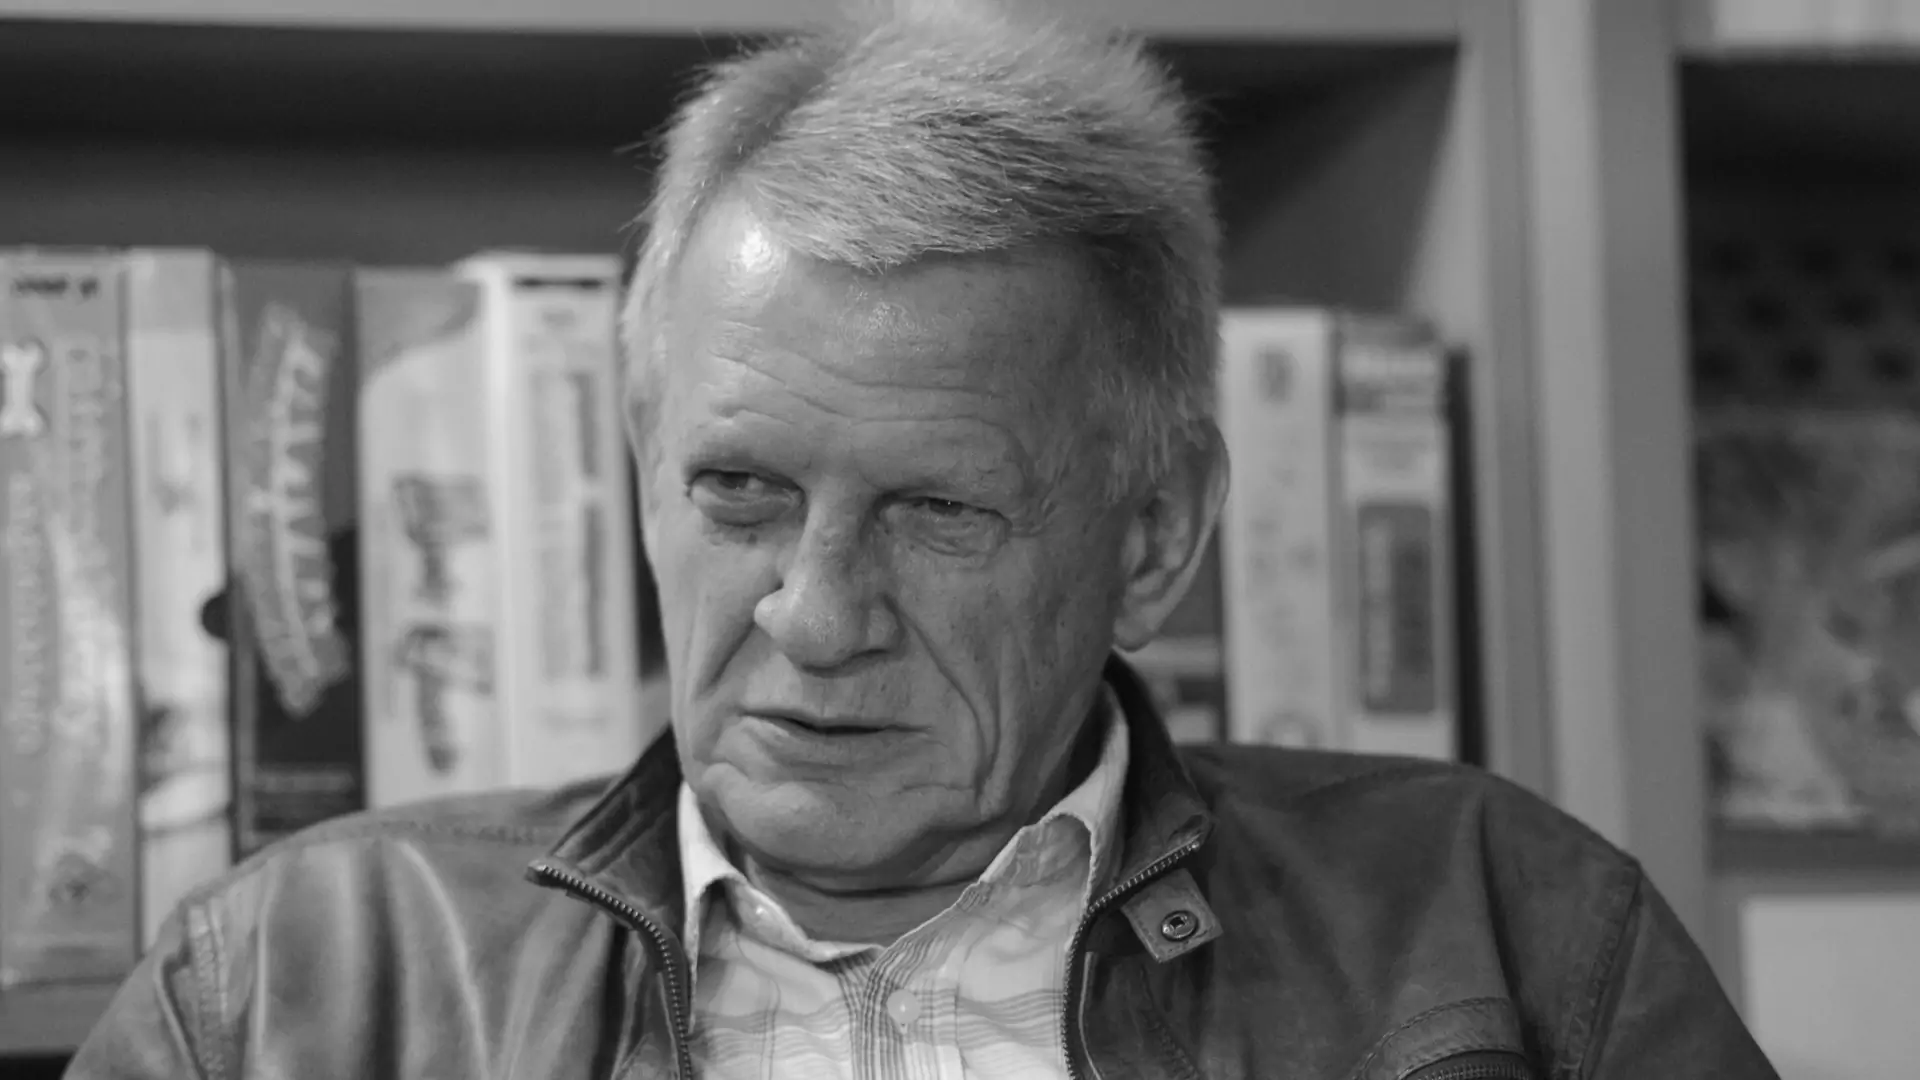 Nie żyje Bronisław Cieślak, aktor znany z kultowego "07, zgłoś się". Miał 77 lat